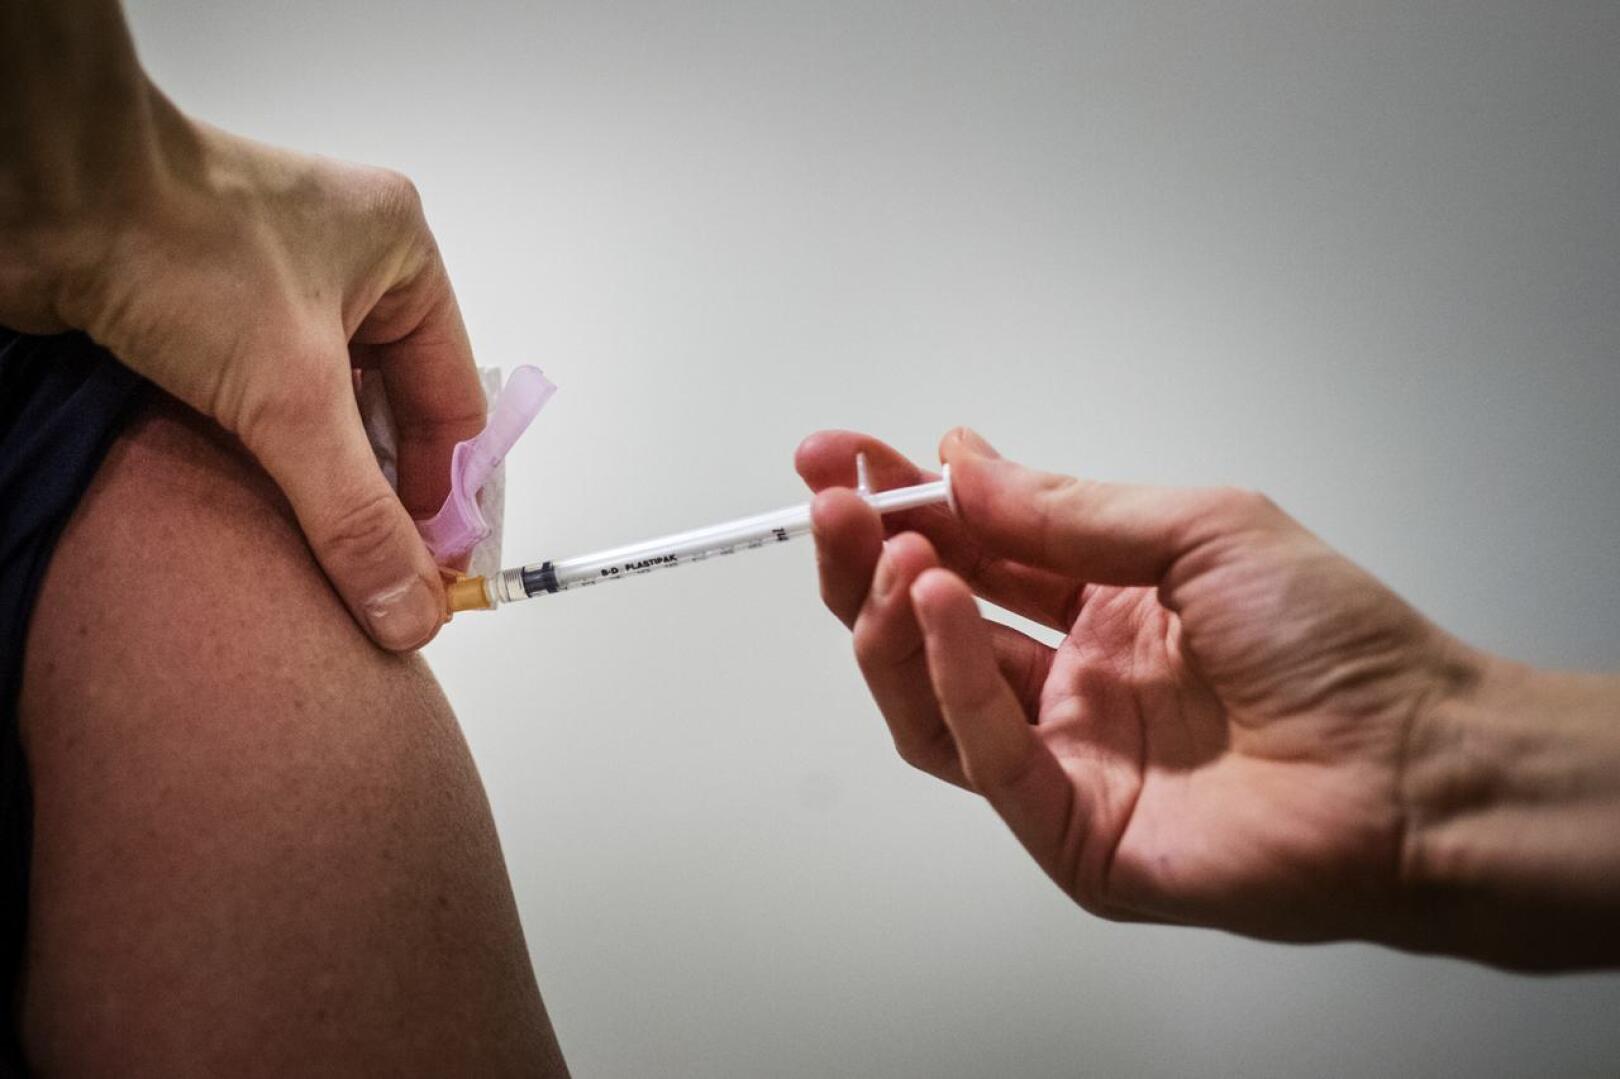 Rokotteita on annettavana niukasti, ja soitot ikäihmisille etenevät sitä mukaa kun rokotteita saadaan, toteaa Kallio tiedotteessaan.